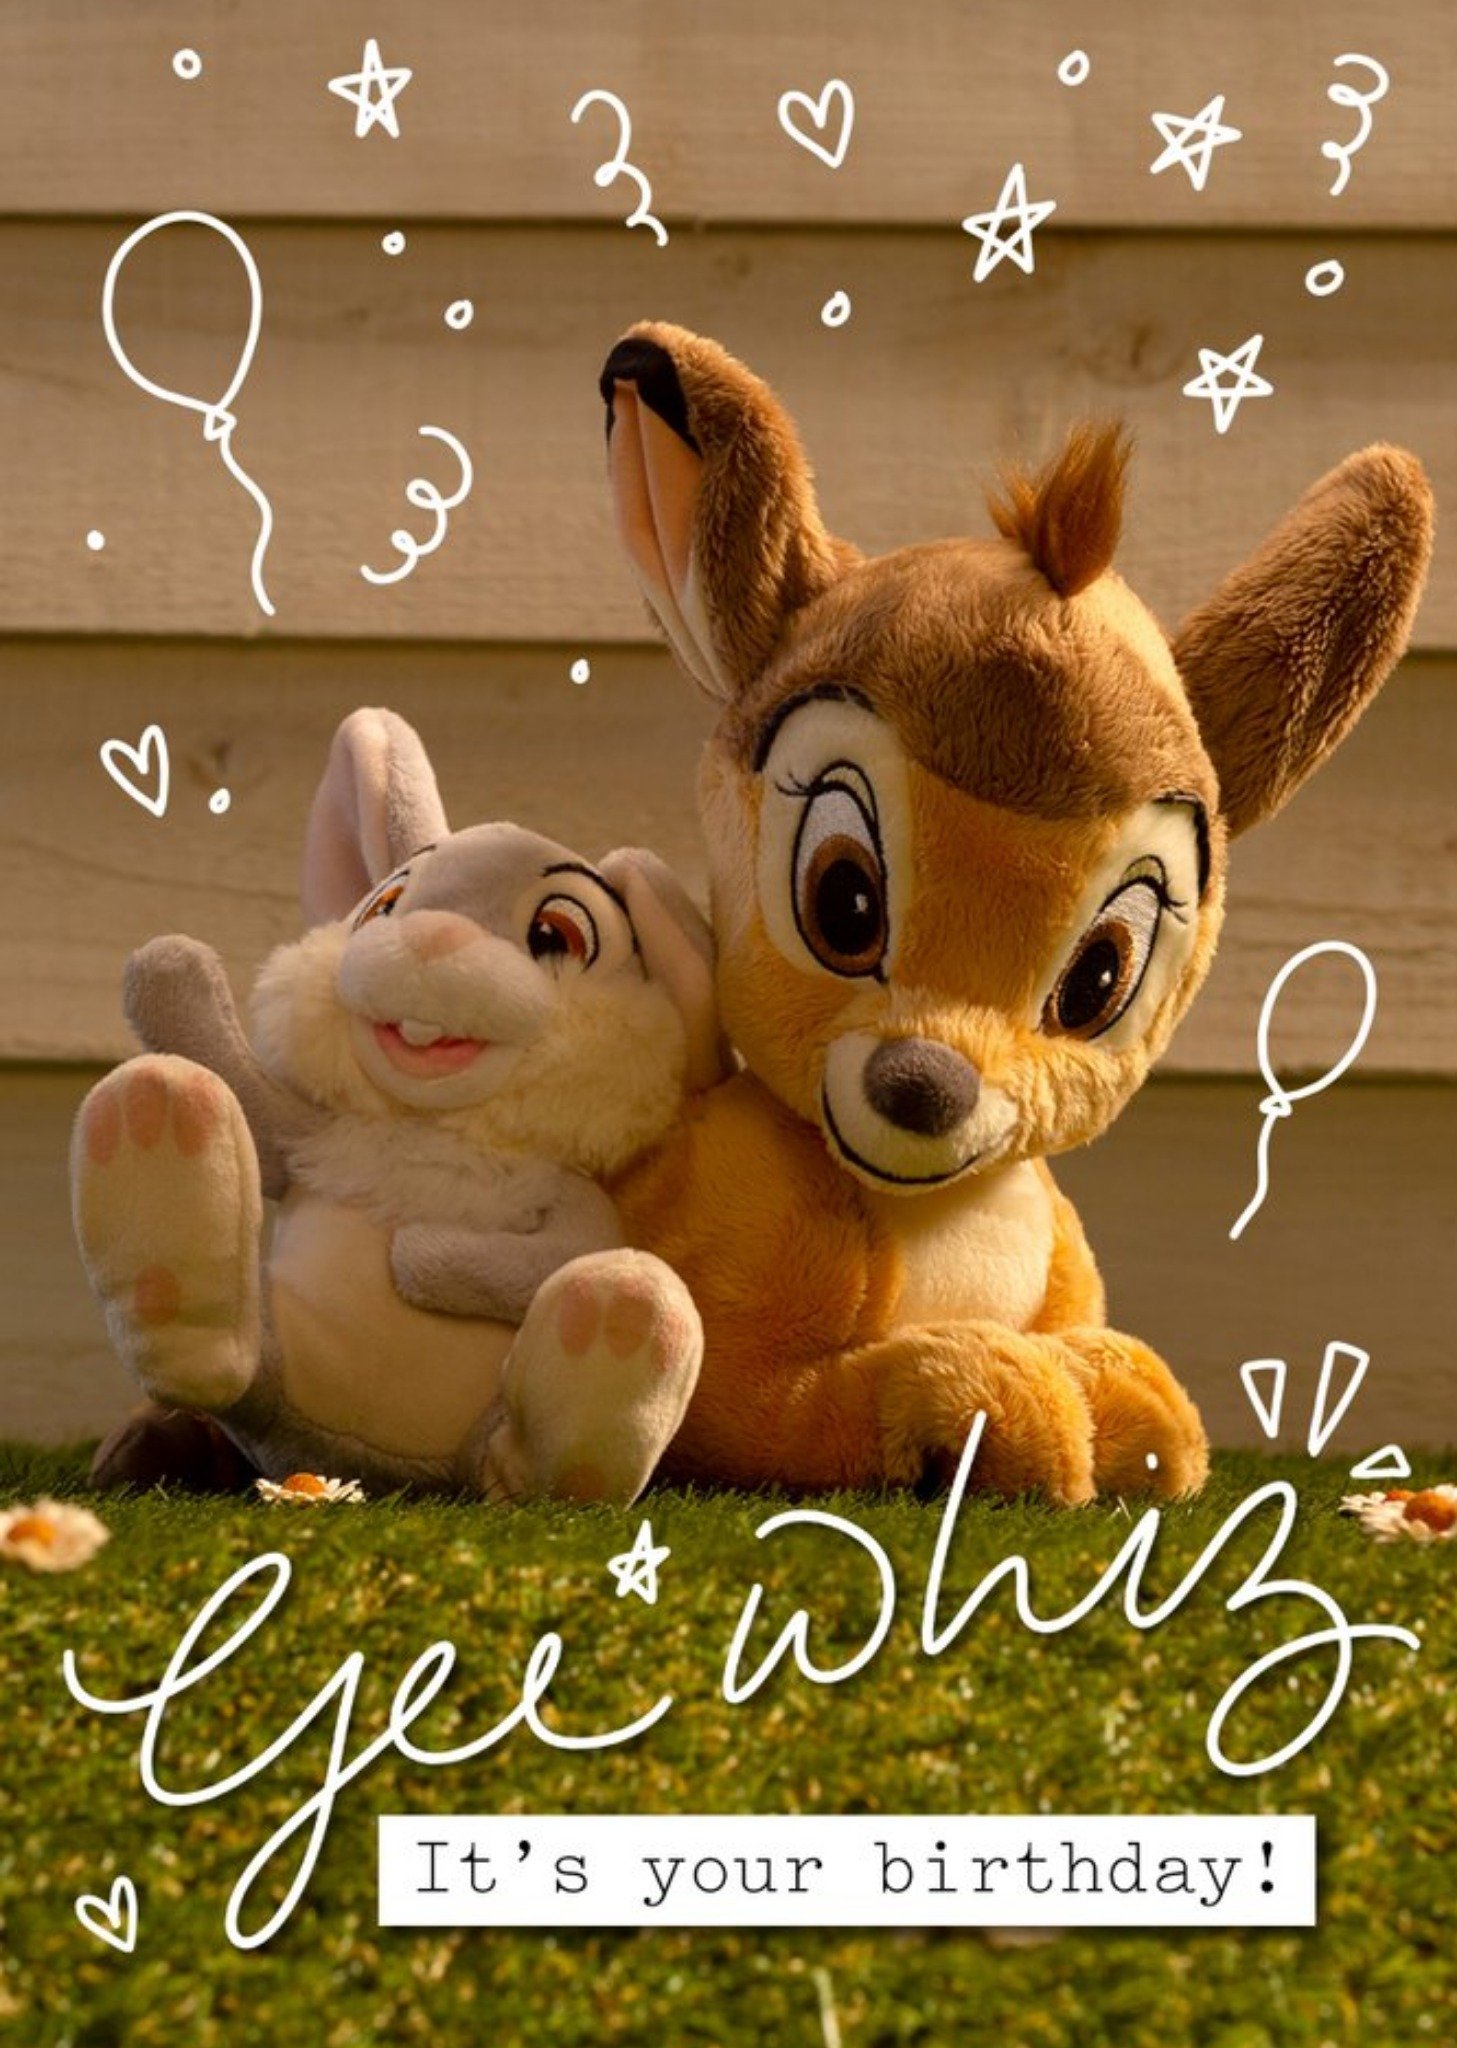 Disney Plush Bambi Gee Whiz Birthday Card, Large